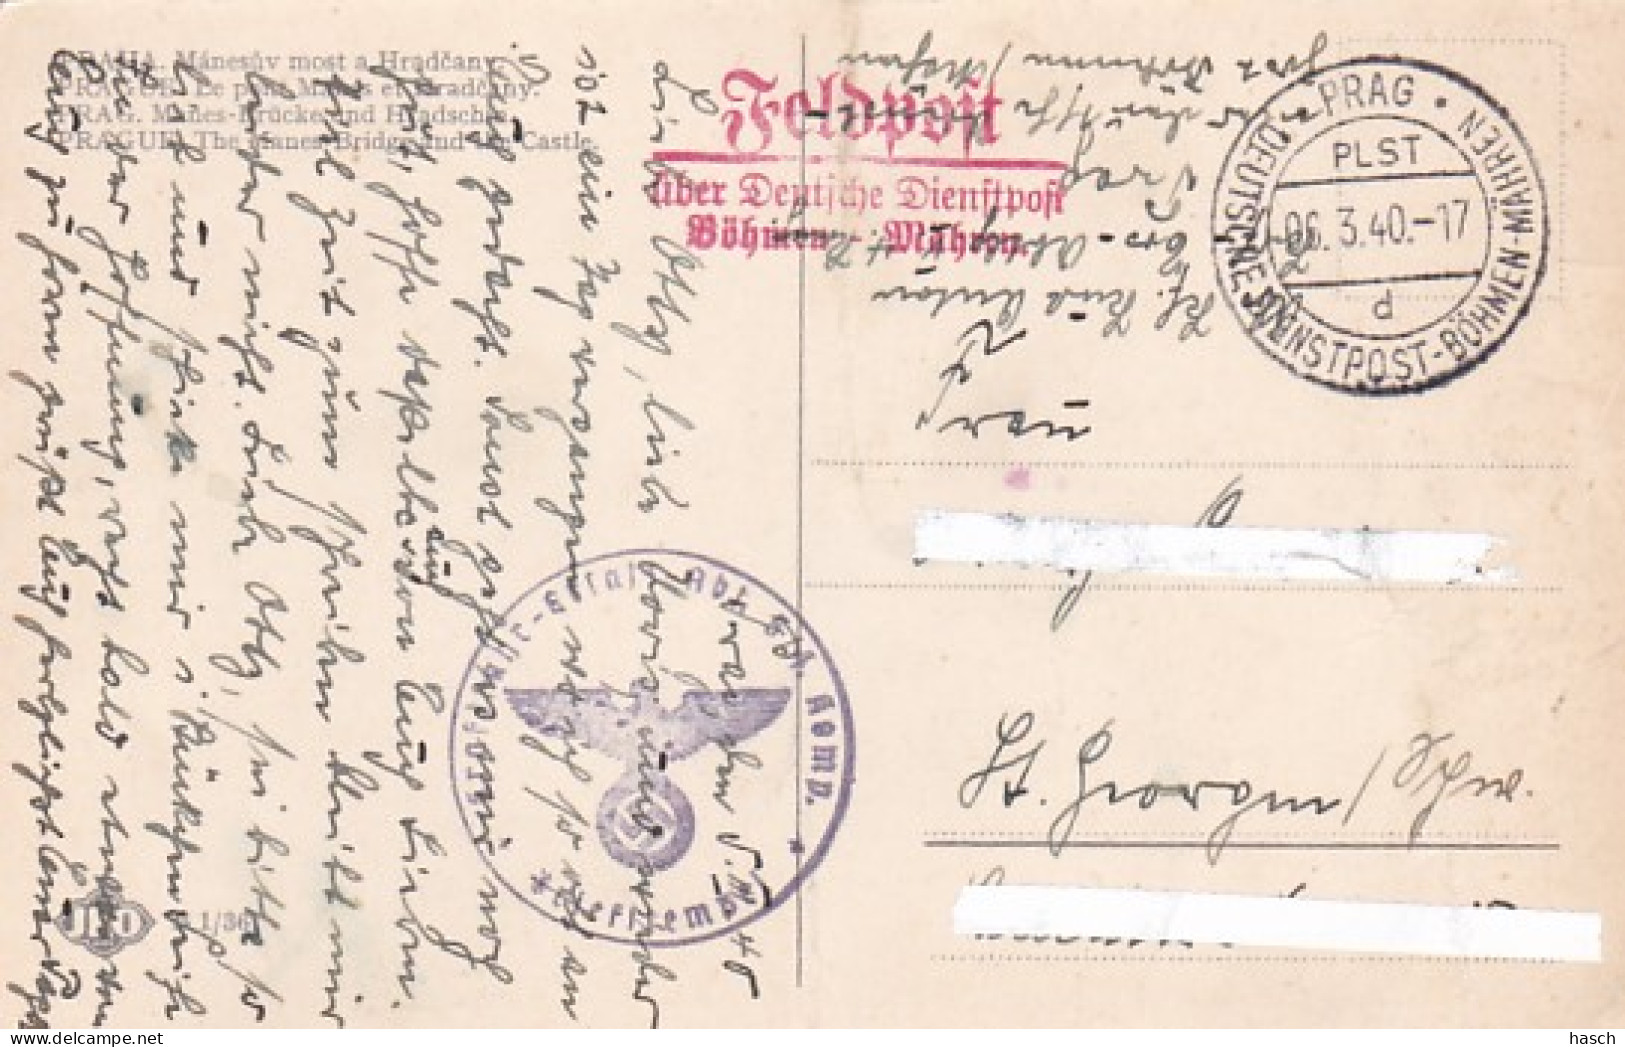 4814 58  Feldpost über DeutscheDienstpost  Böhmen-Mähren. Stempel: Pragd / 06.3.40. Briefstempel  Kraftfahr-Ersatz Abt 5 - Covers